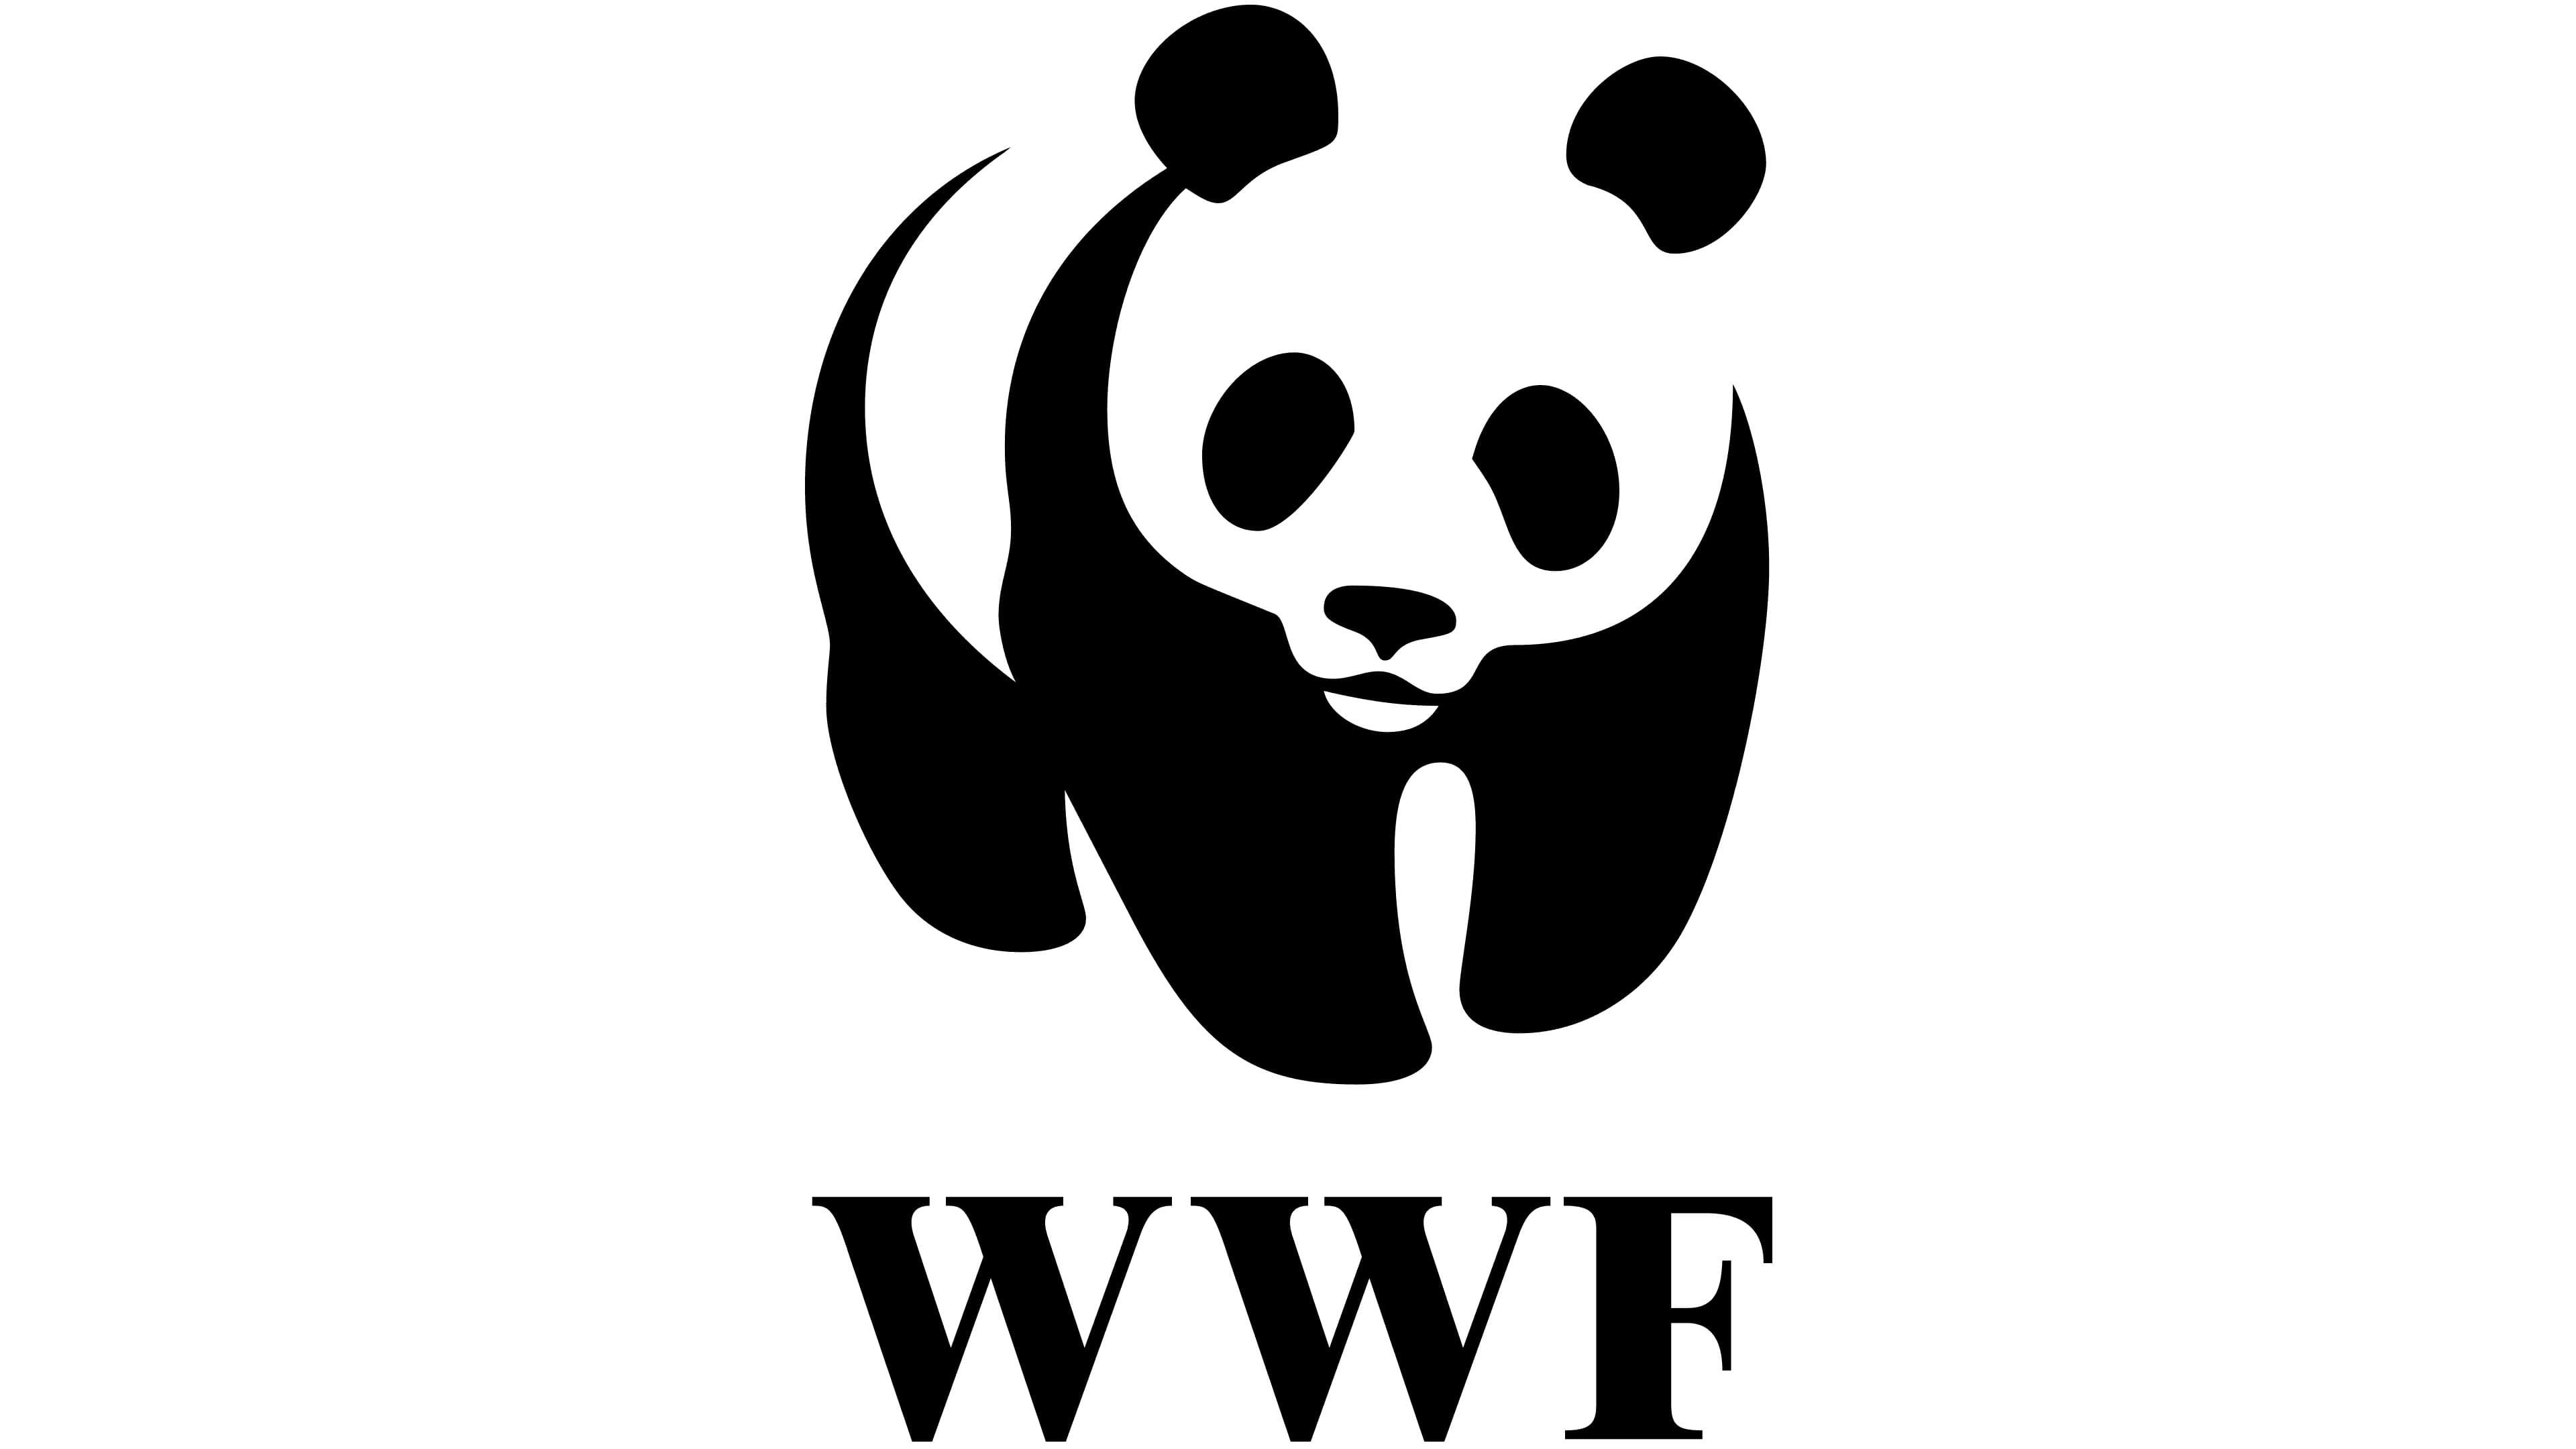 The World Wildlife Fund